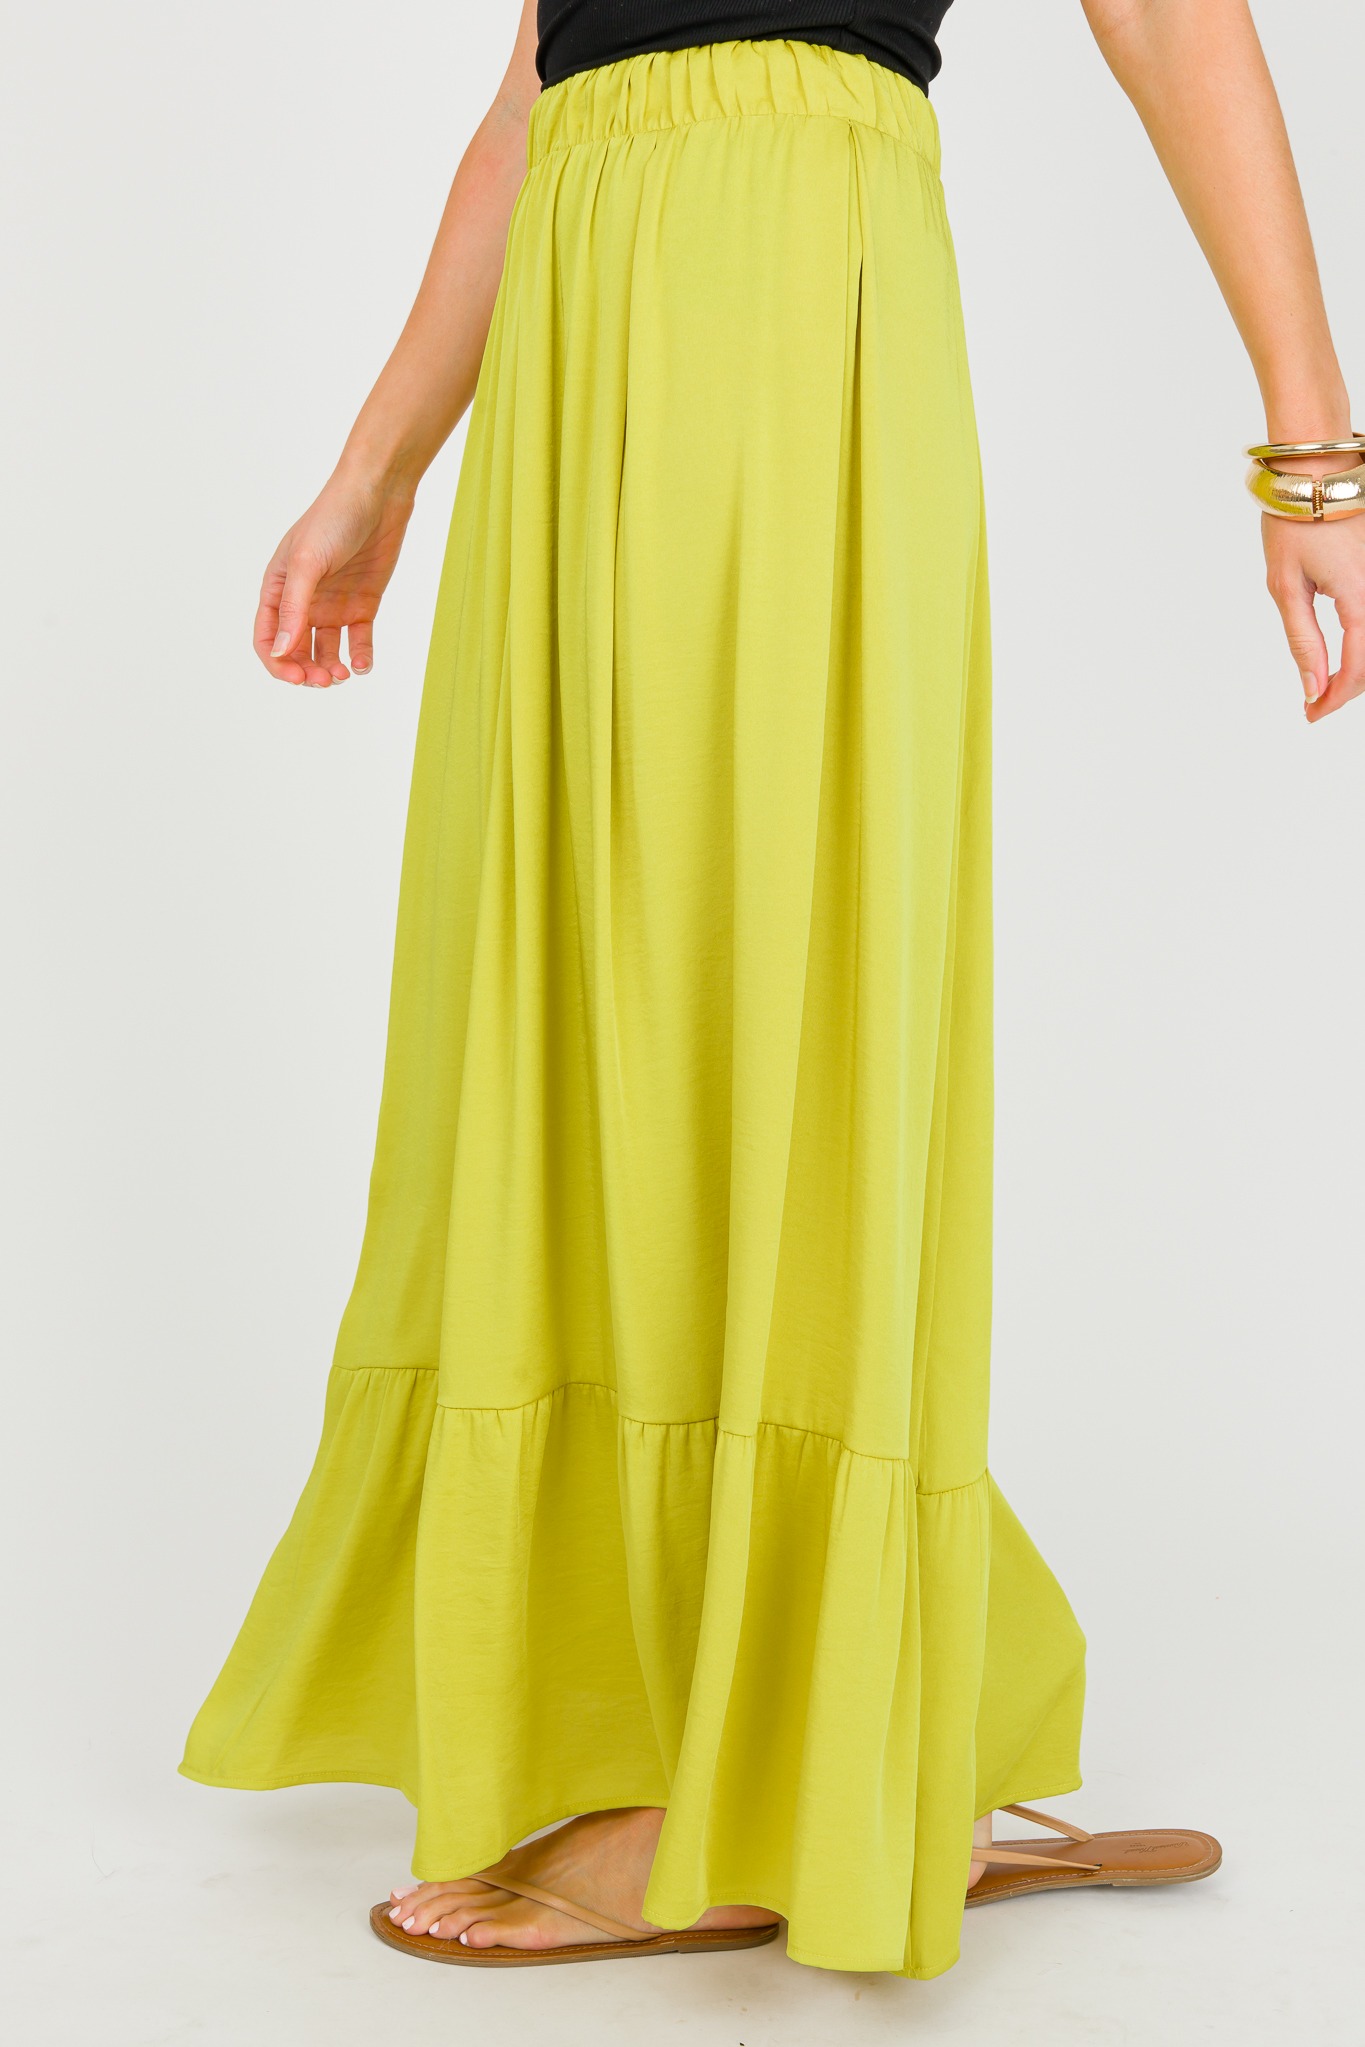 Silk Tiered Skirt, Chartreuse - 0326-126.jpg